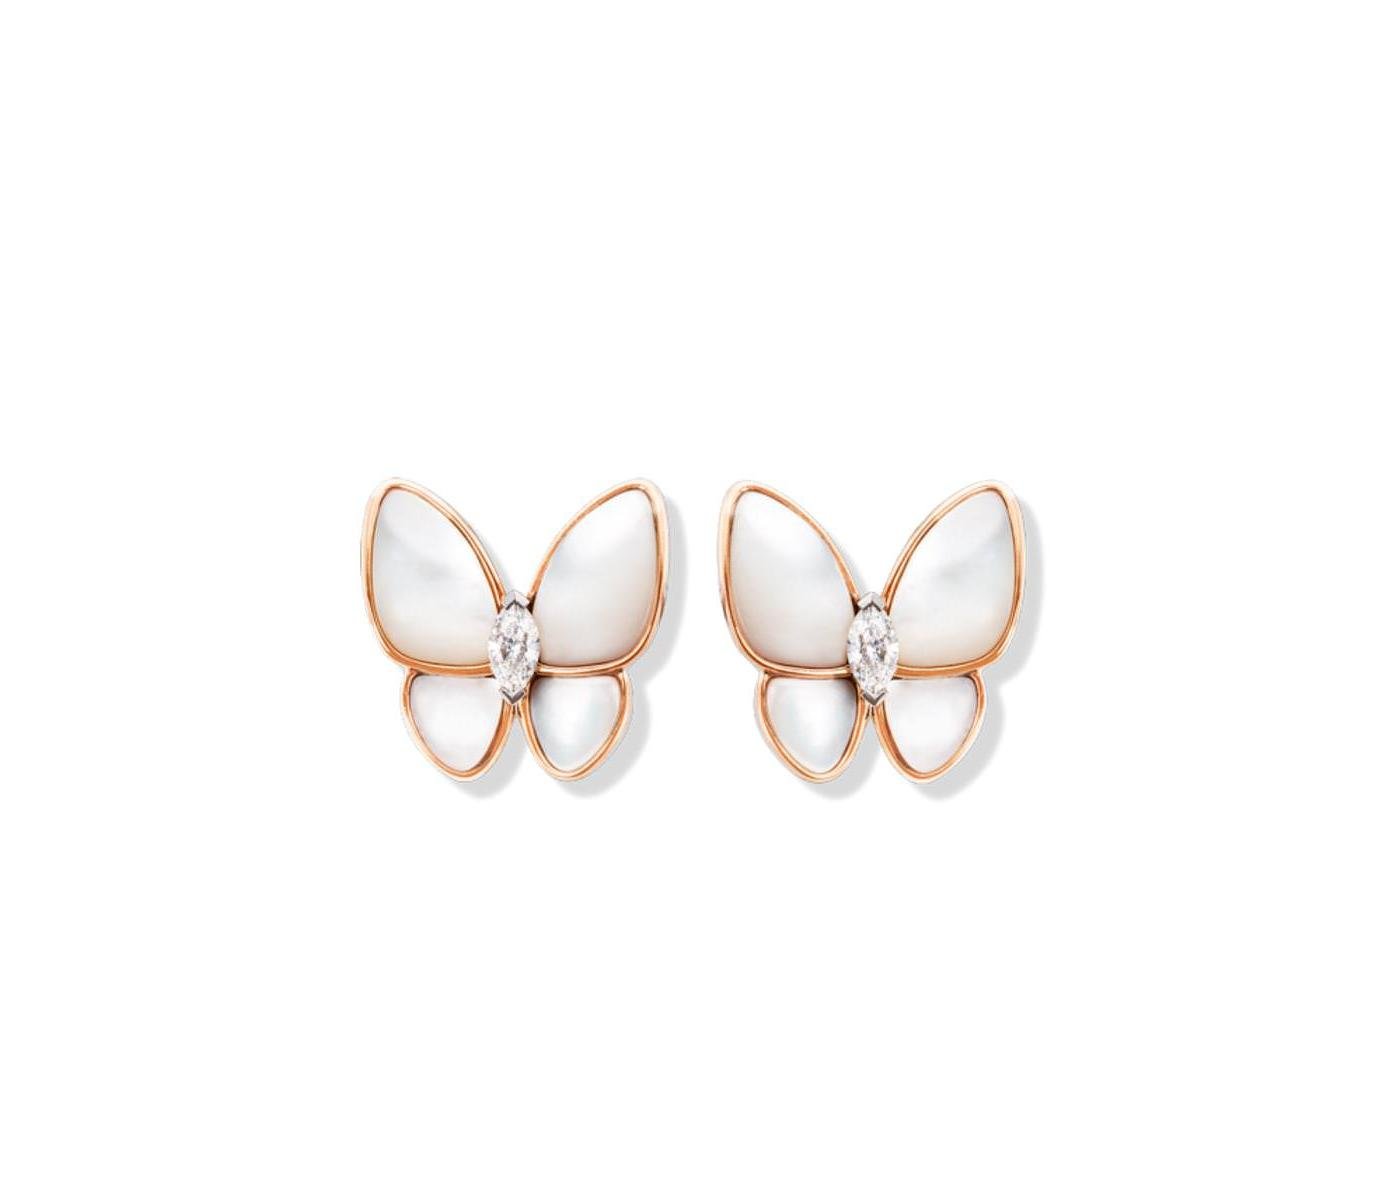 Earrings by Van Cleef and Arpels